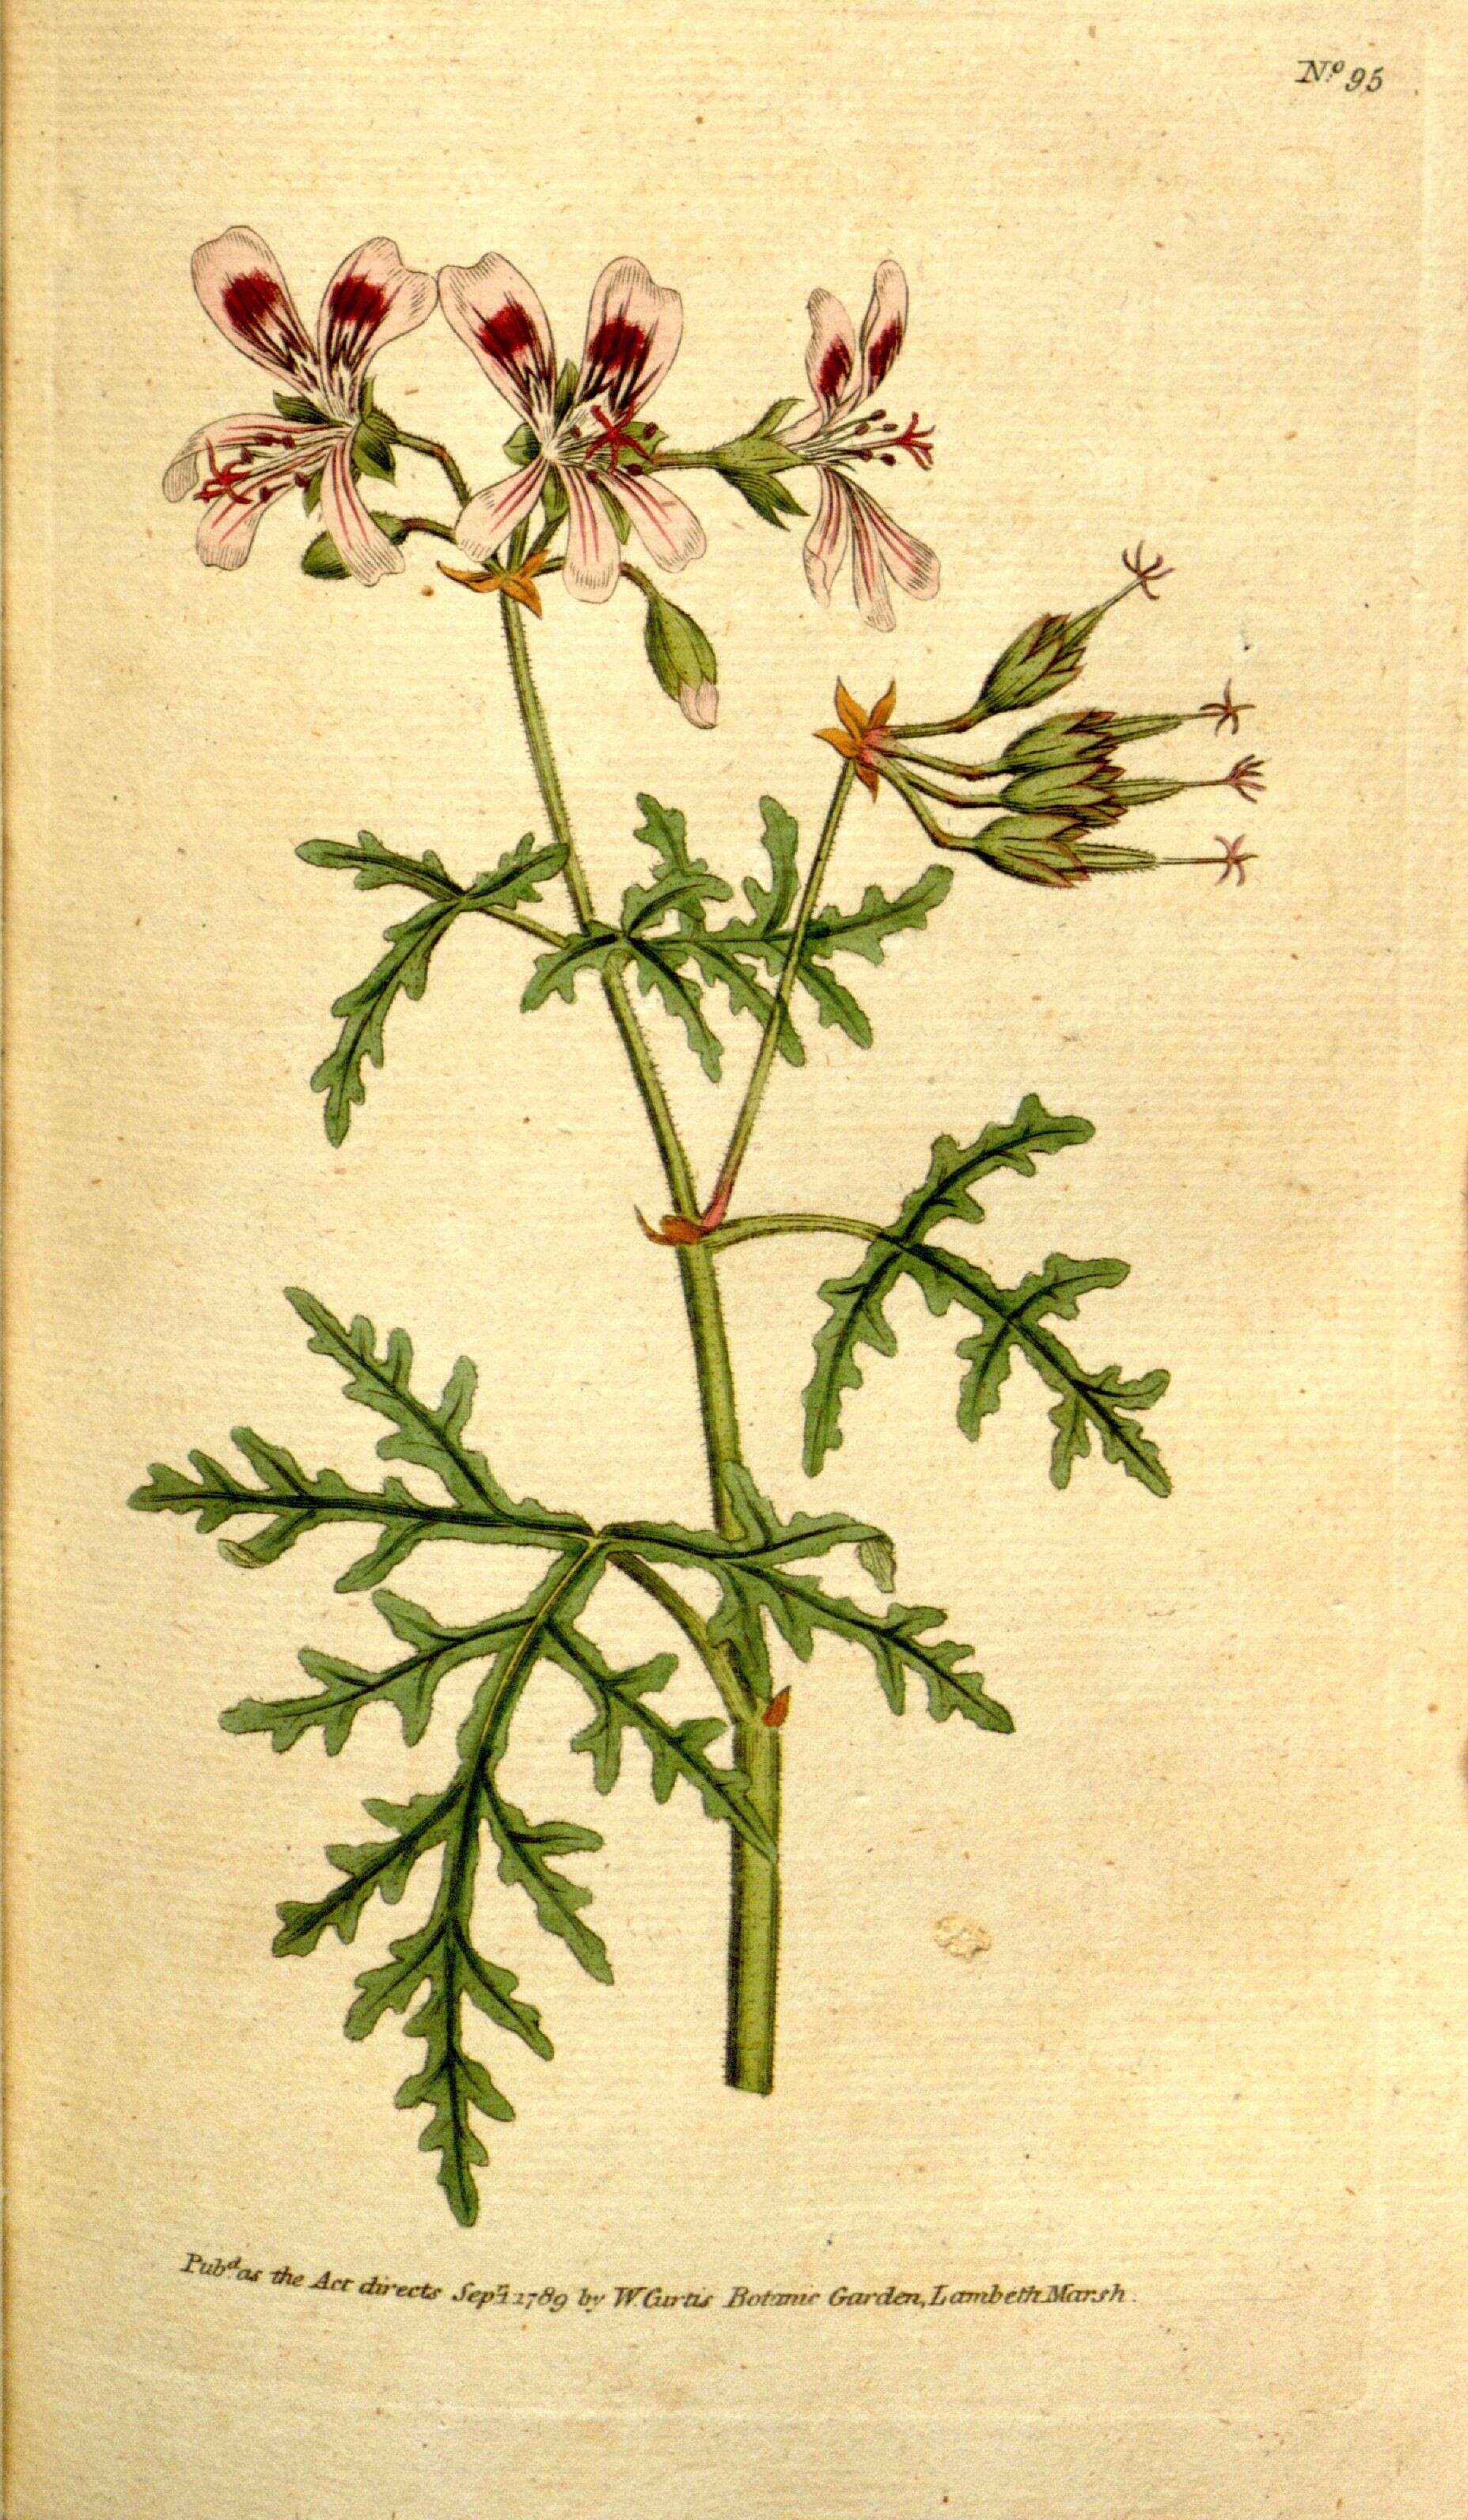 Image of rasp-leaf pelargonium